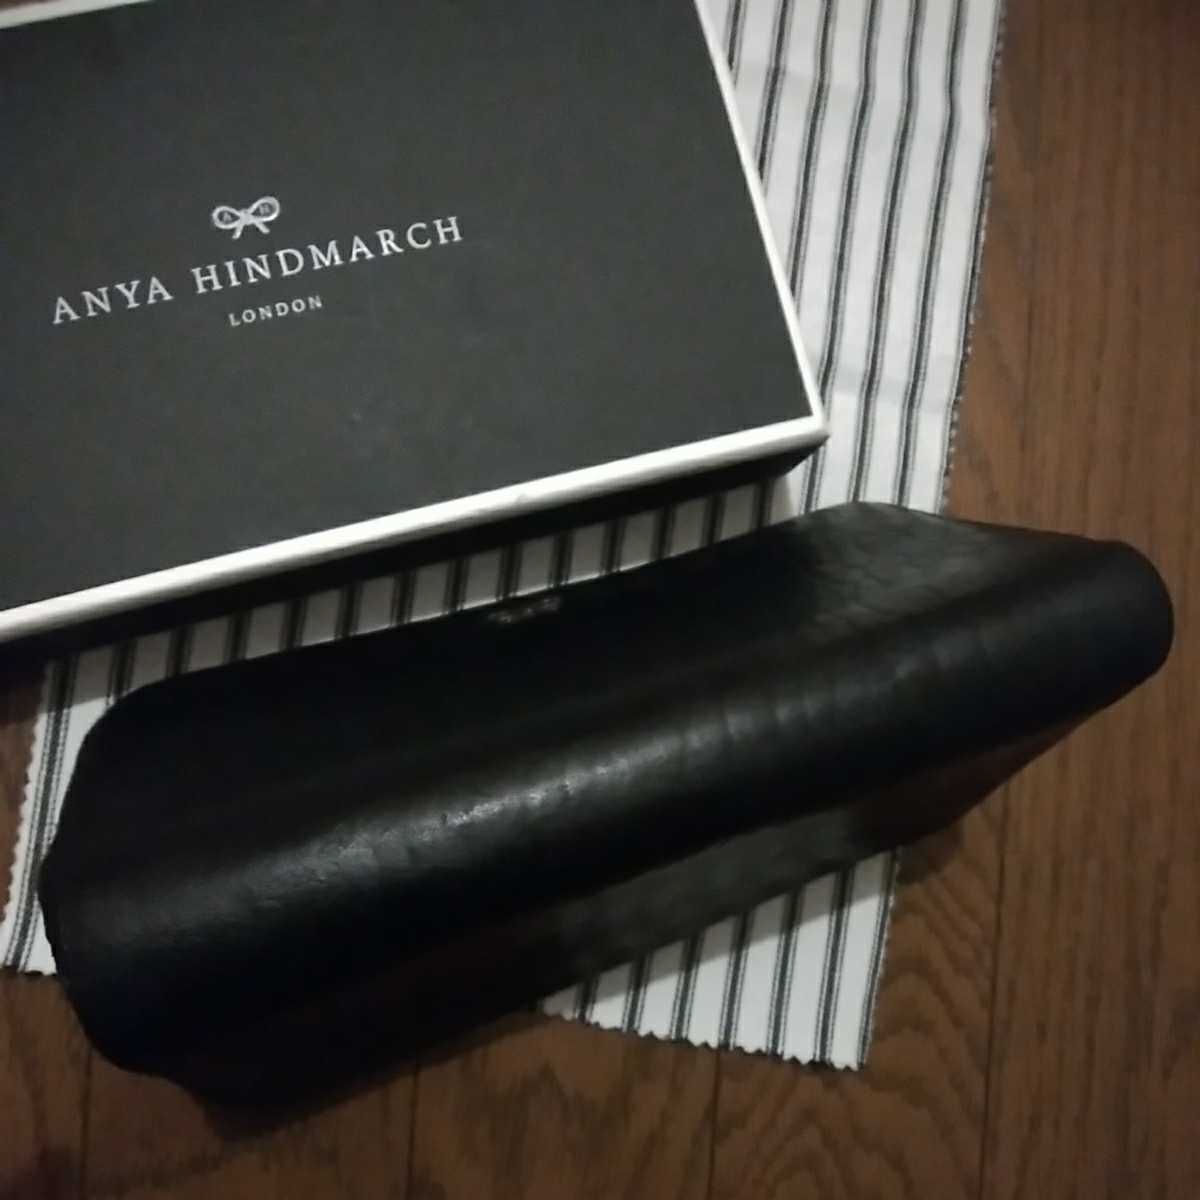  обычная цена 5.3 десять тысяч иен Anya Hindmarch ANYA HINDMARCH раунд застежка-молния кошелек kau кожа натуральная кожа черный чёрный высококлассный Англия Британия бренд Celeb любимый 